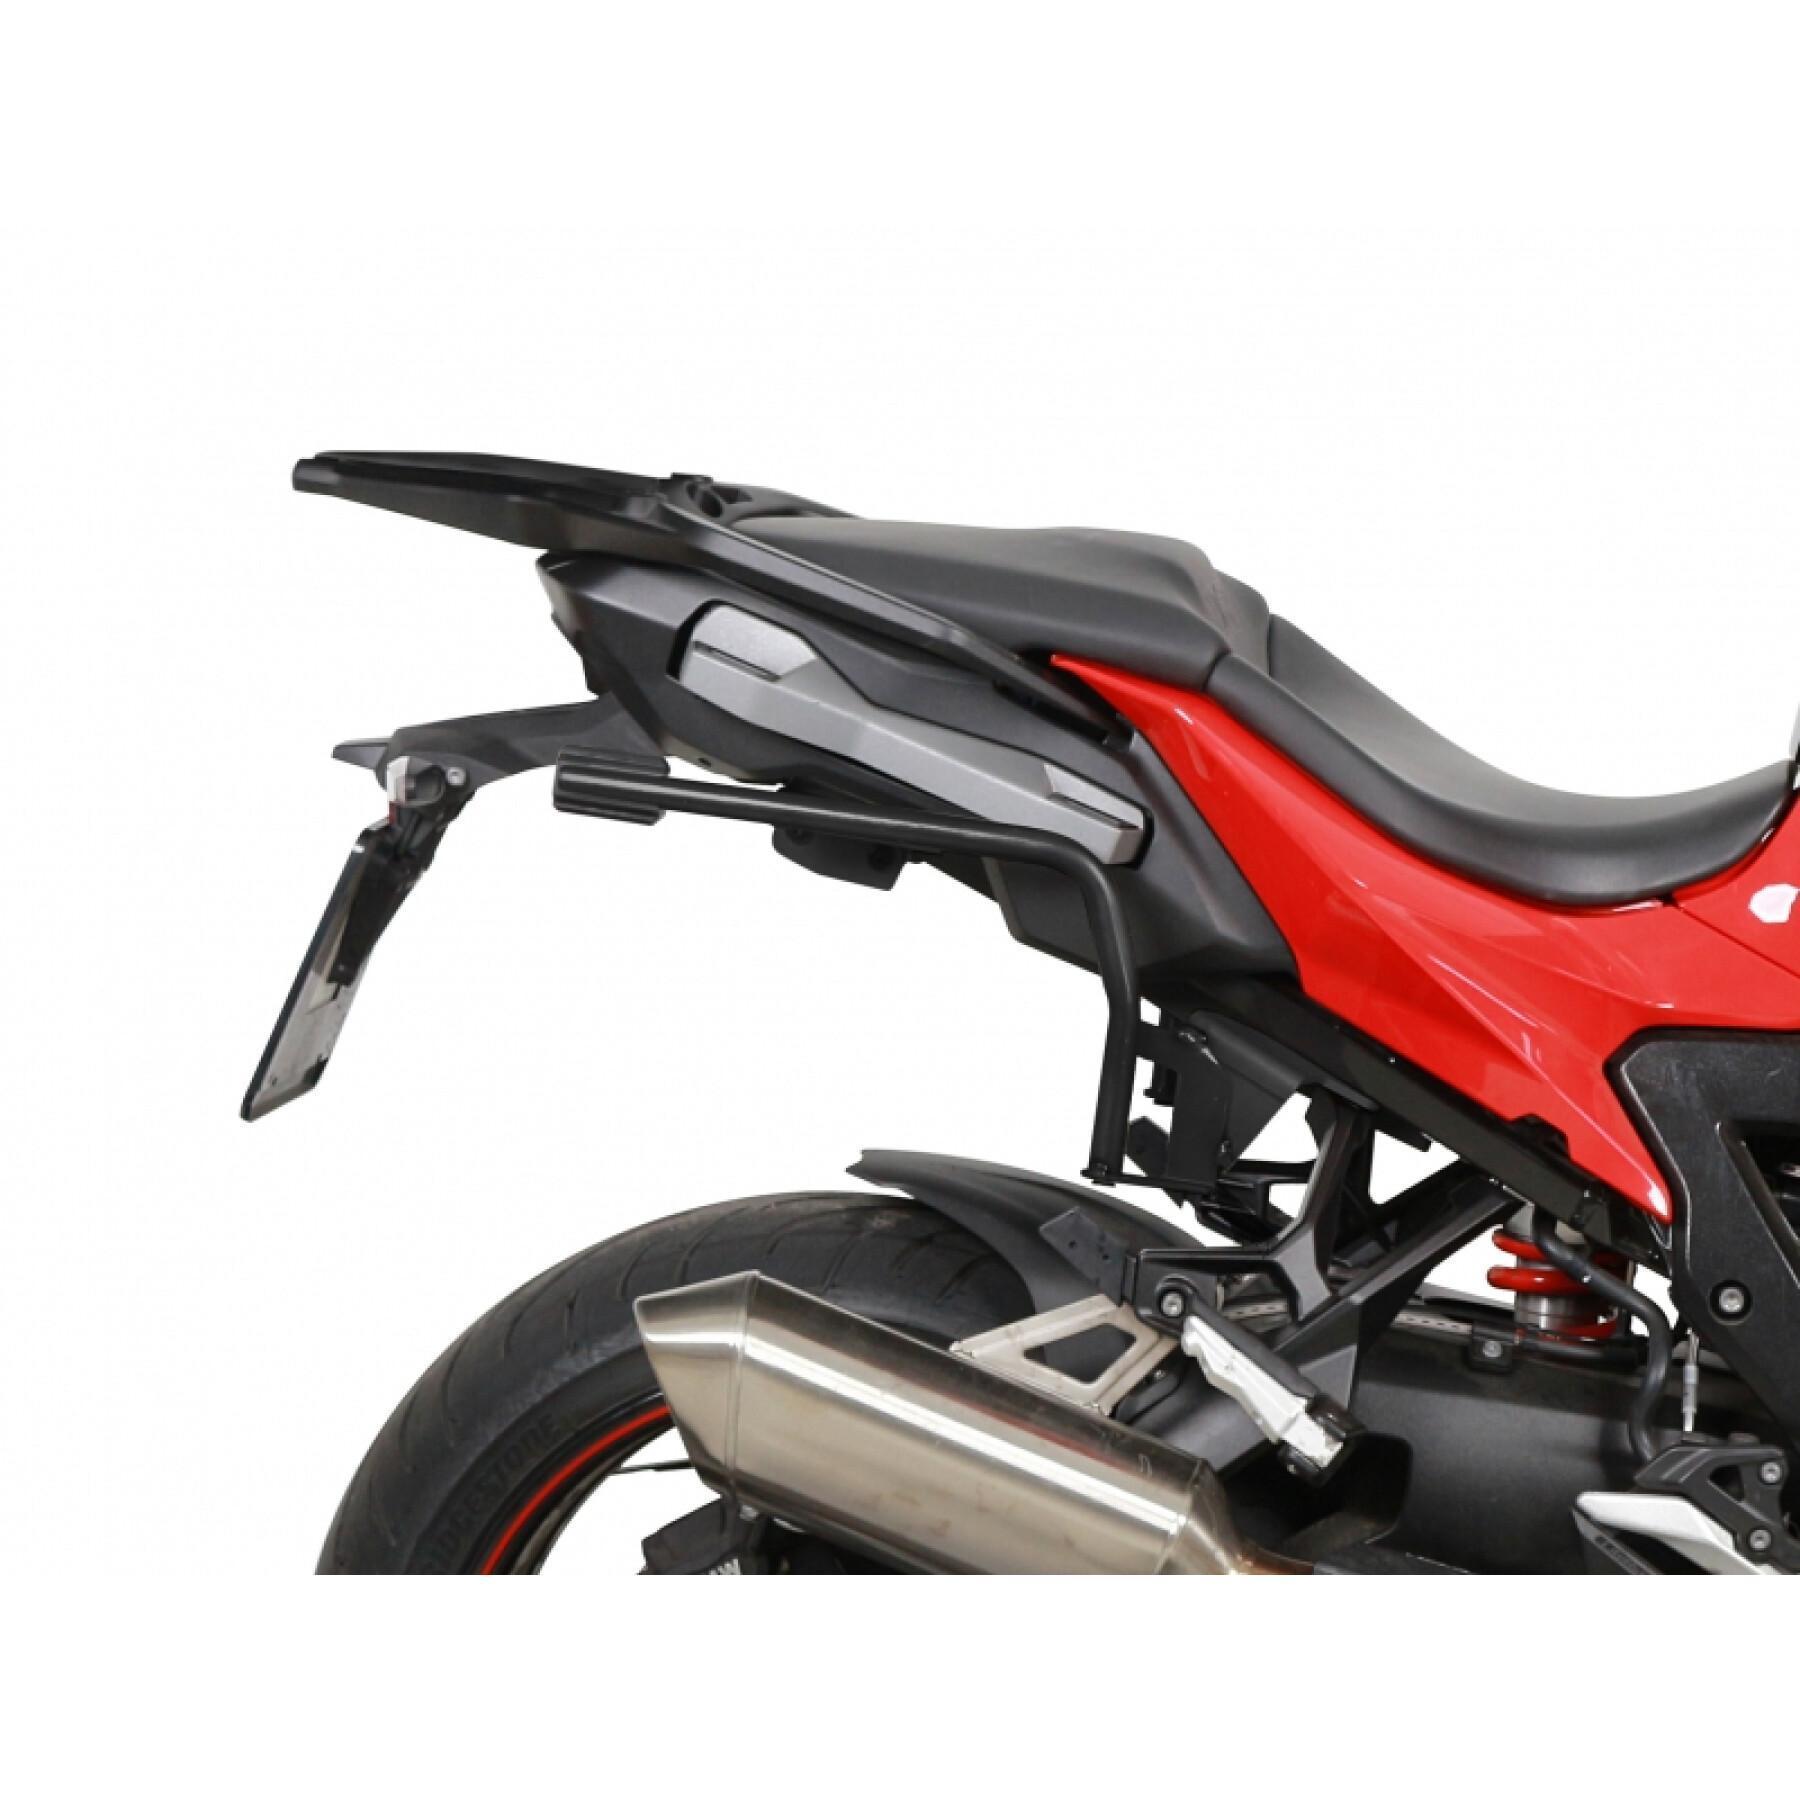 Sidostöd för motorcykel Shad 3P System Bmw S1000Xr 2020-2020